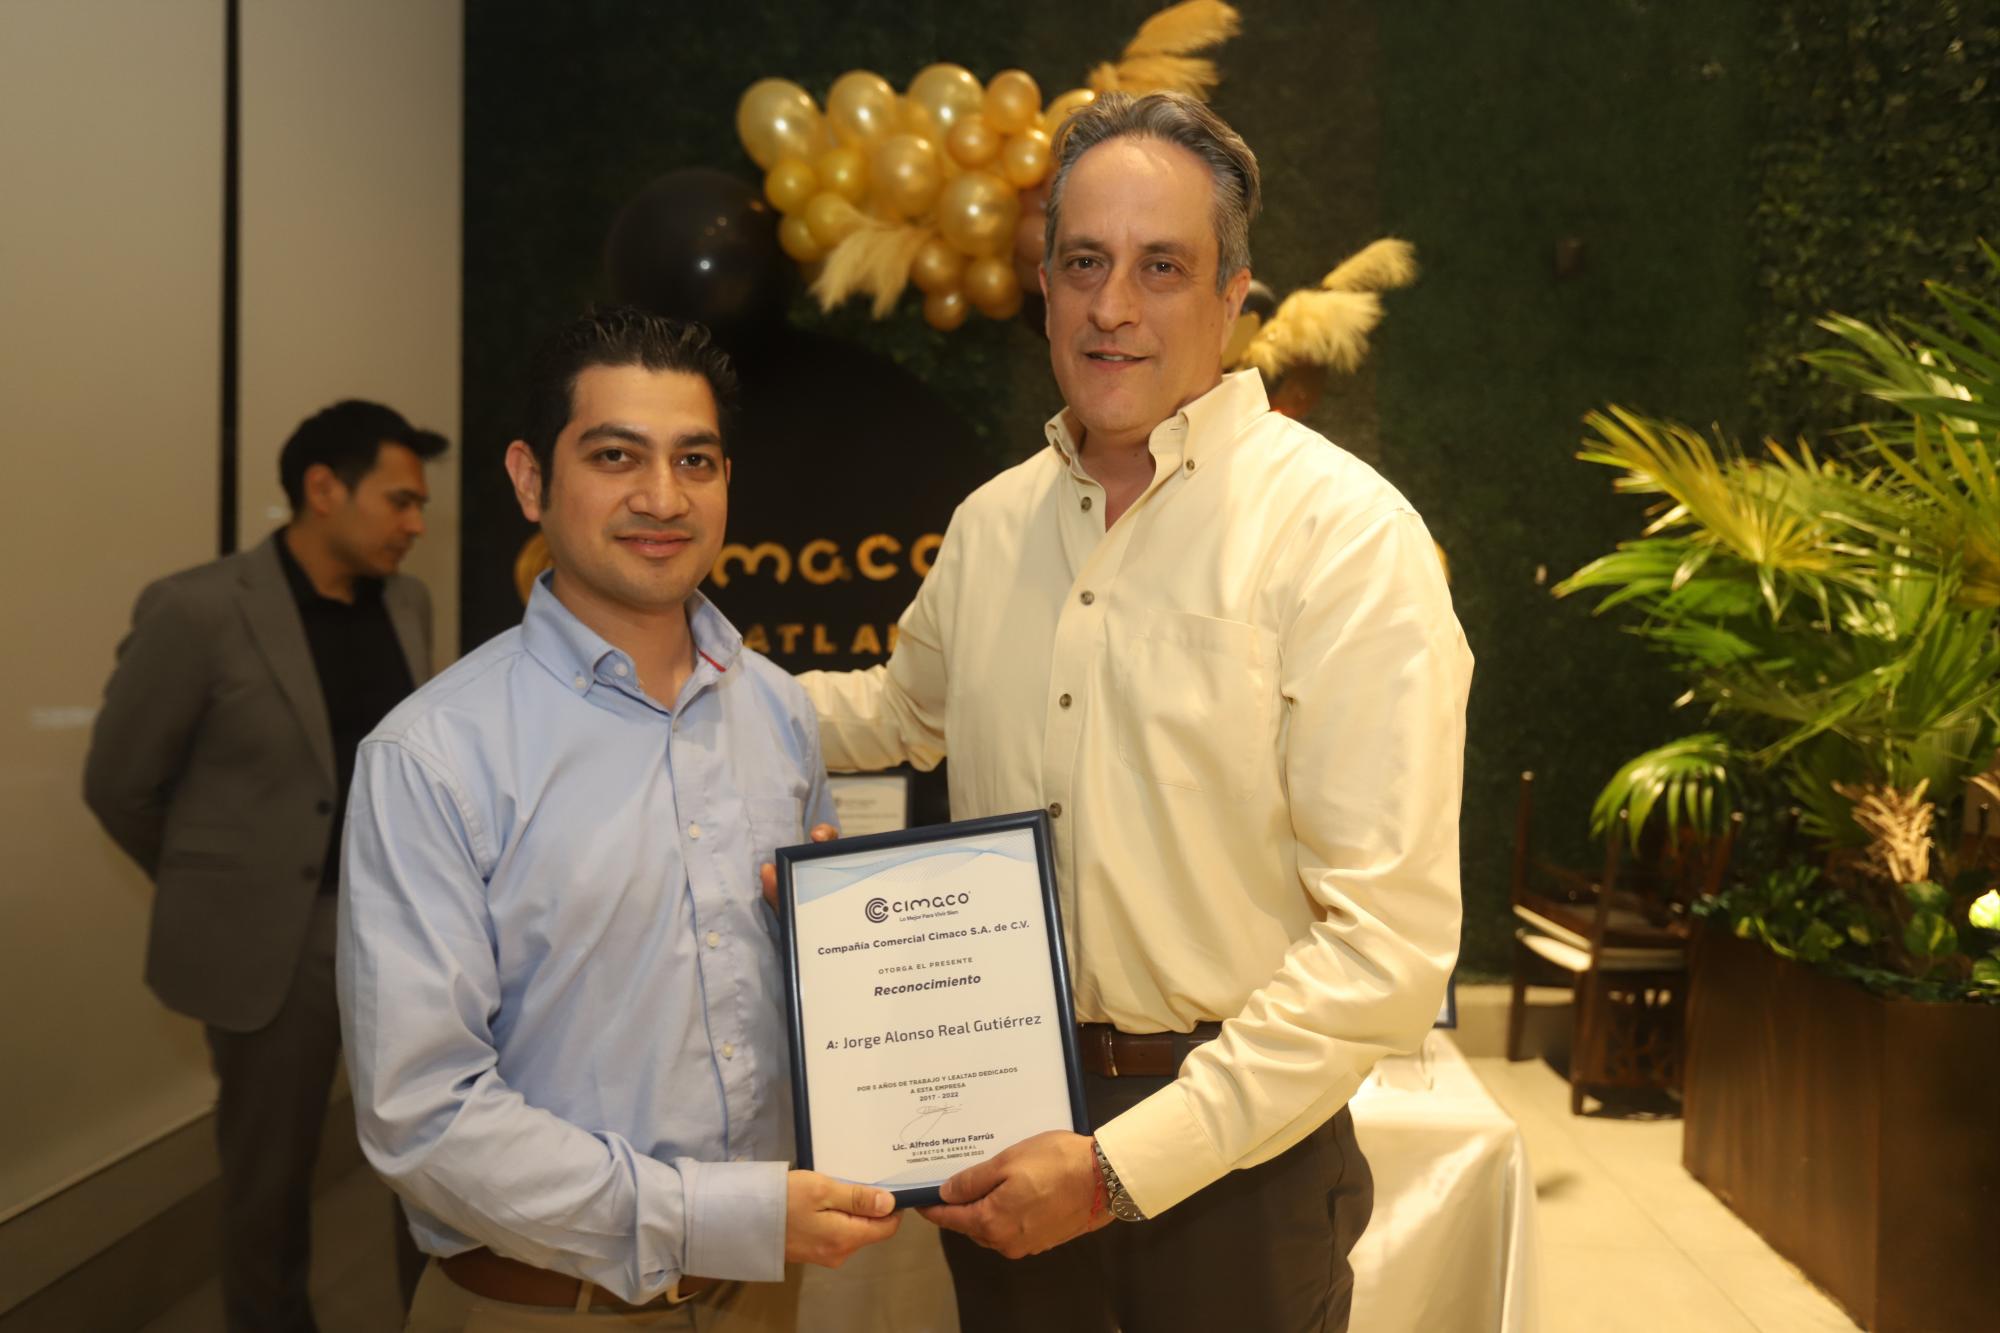 $!Jorge Alonso Real Gutiérrez recibe su reconocimiento de manos de Gilberto Jiménez.